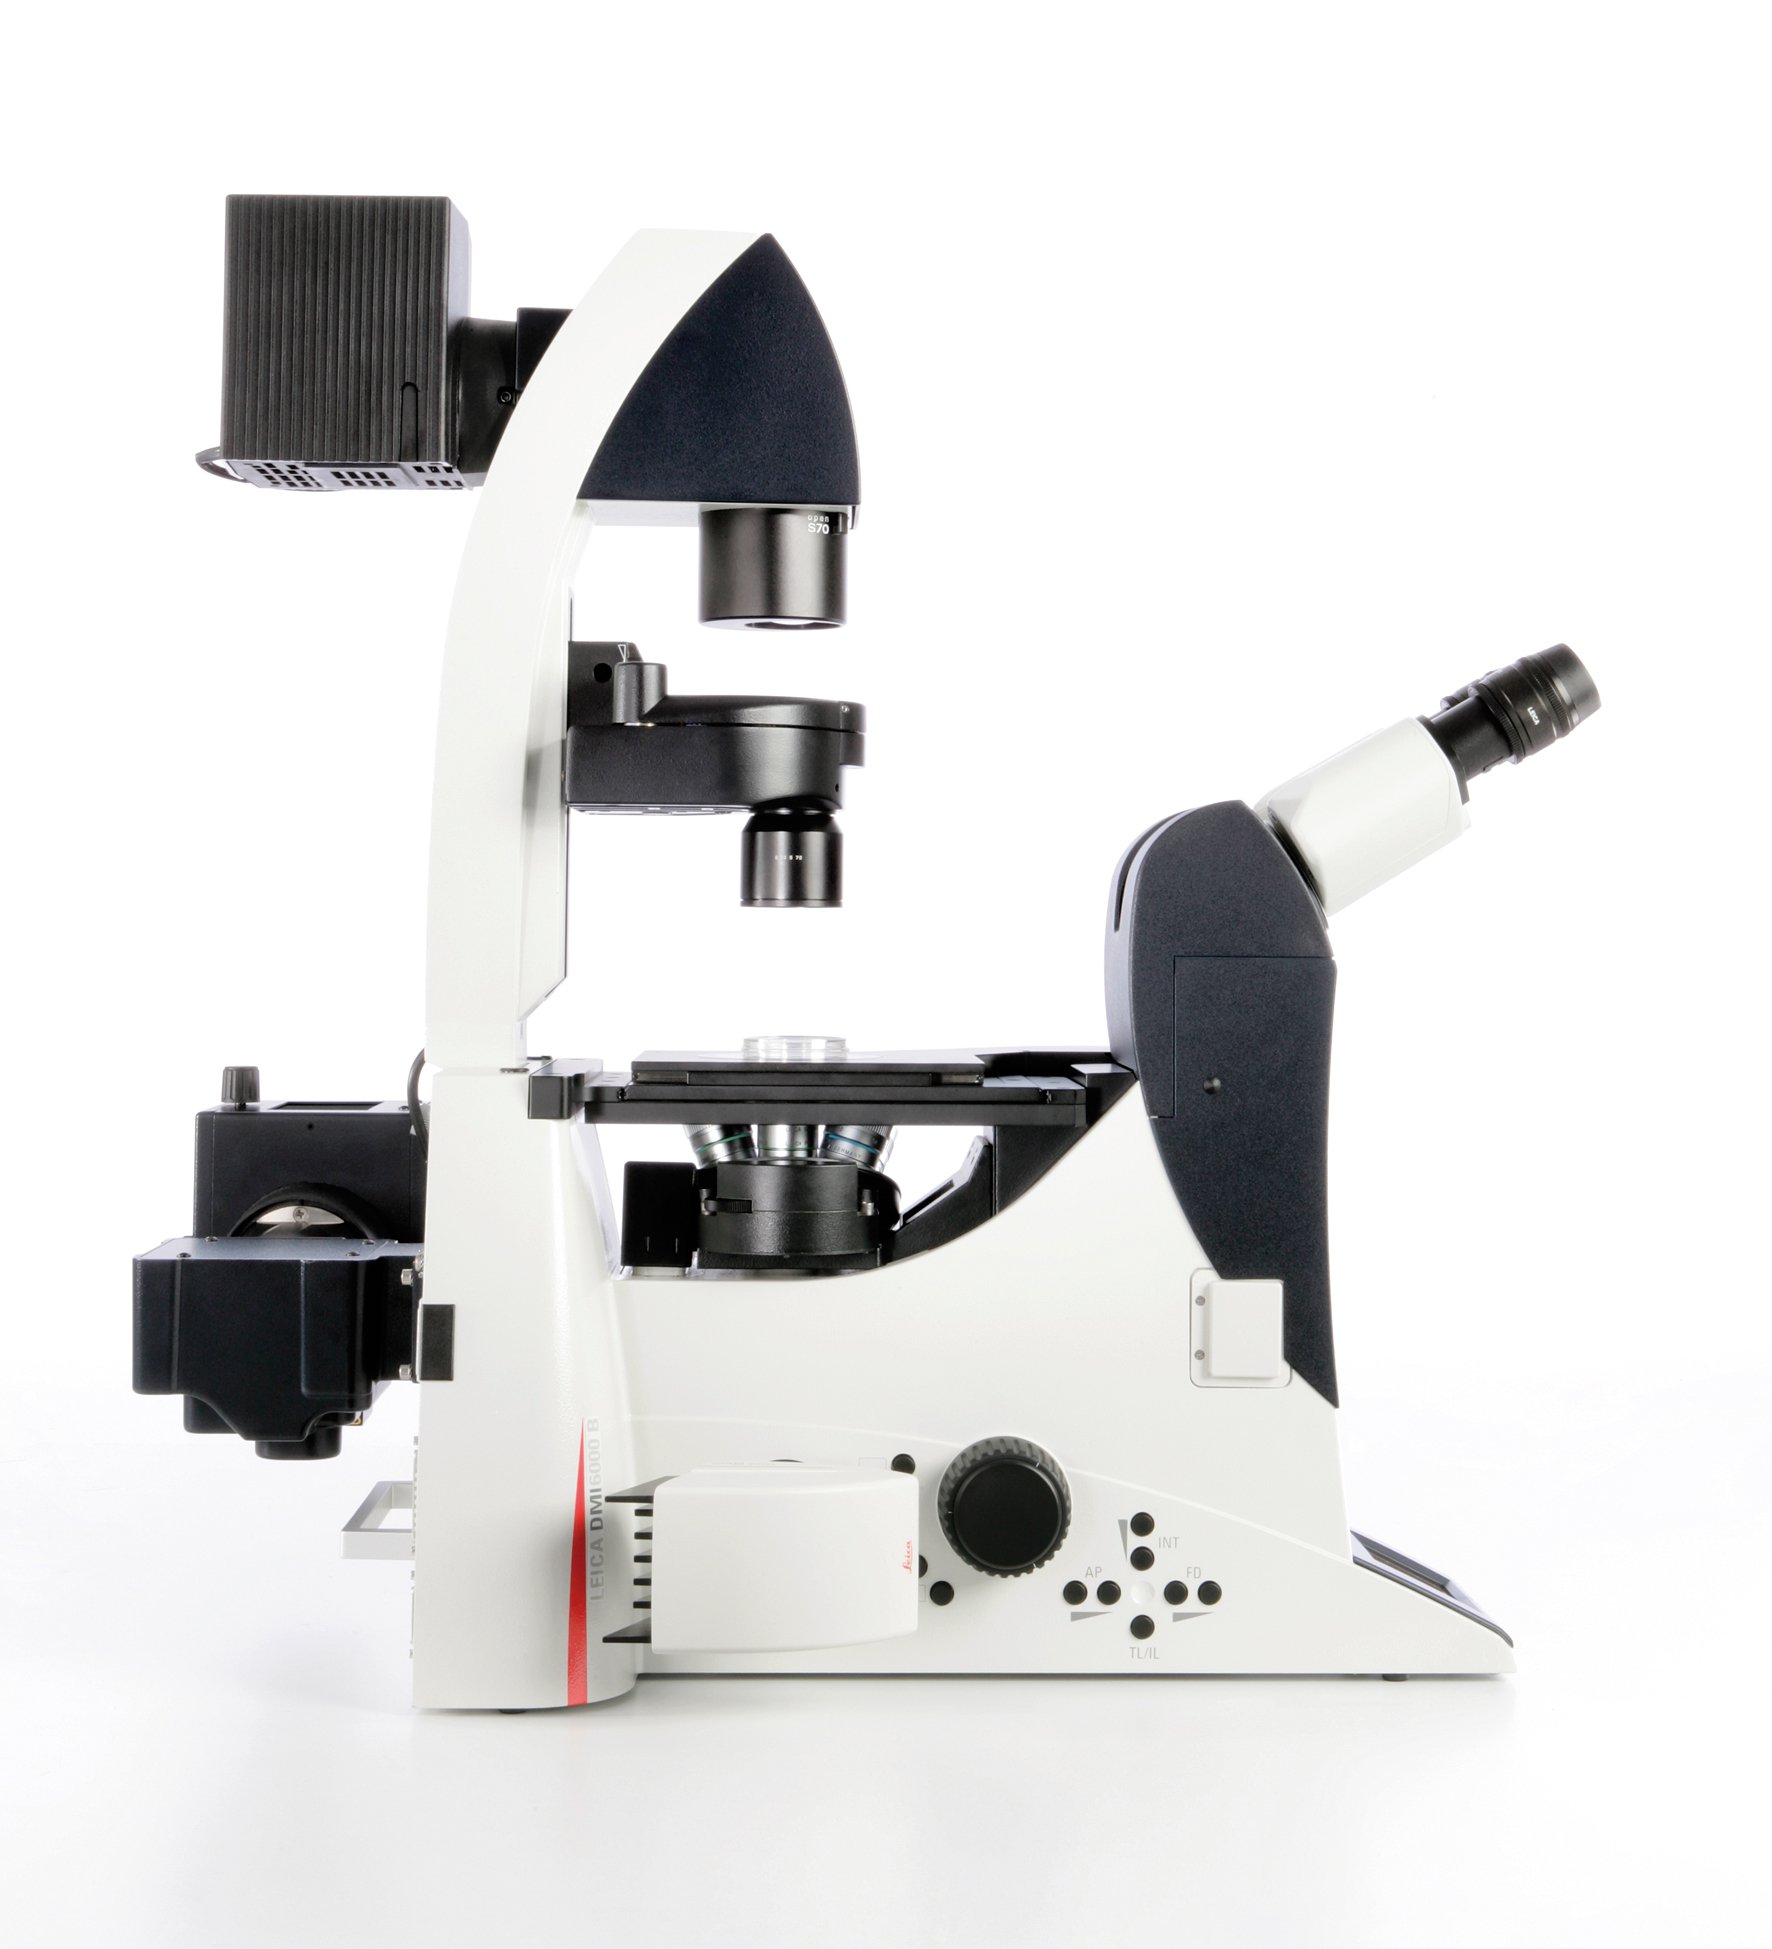 El sistema Leica DMI6000 B ofrece un alto nivel de automatización para aplicaciones de investigación avanzadas.